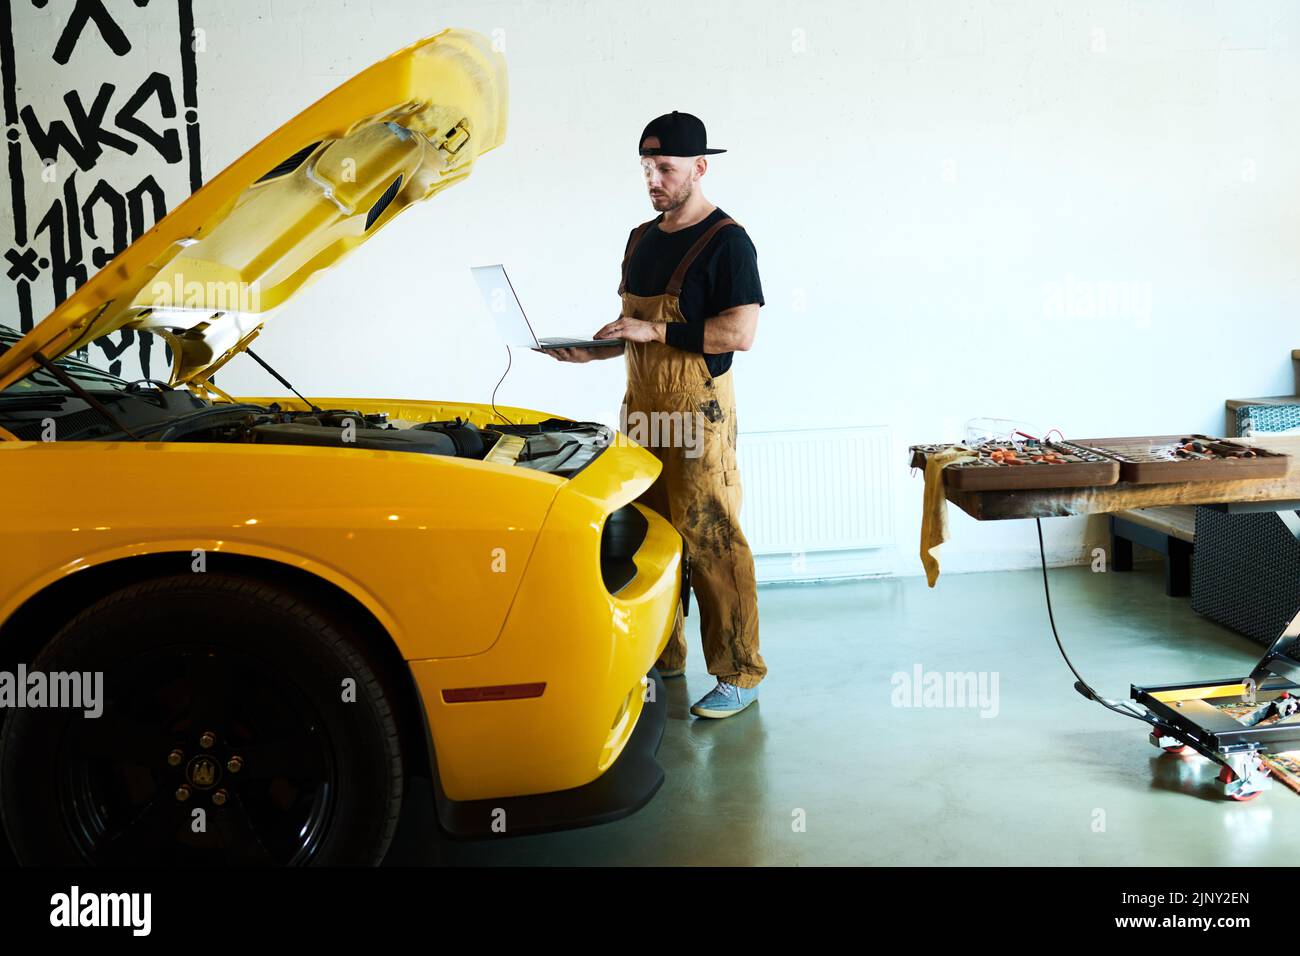 Junger Mechaniker in der Arbeitskleidung, der Laptop während der technischen Diagnose des Motors und anderer Details des Elektroautos der gelben Farbe hält Stockfoto